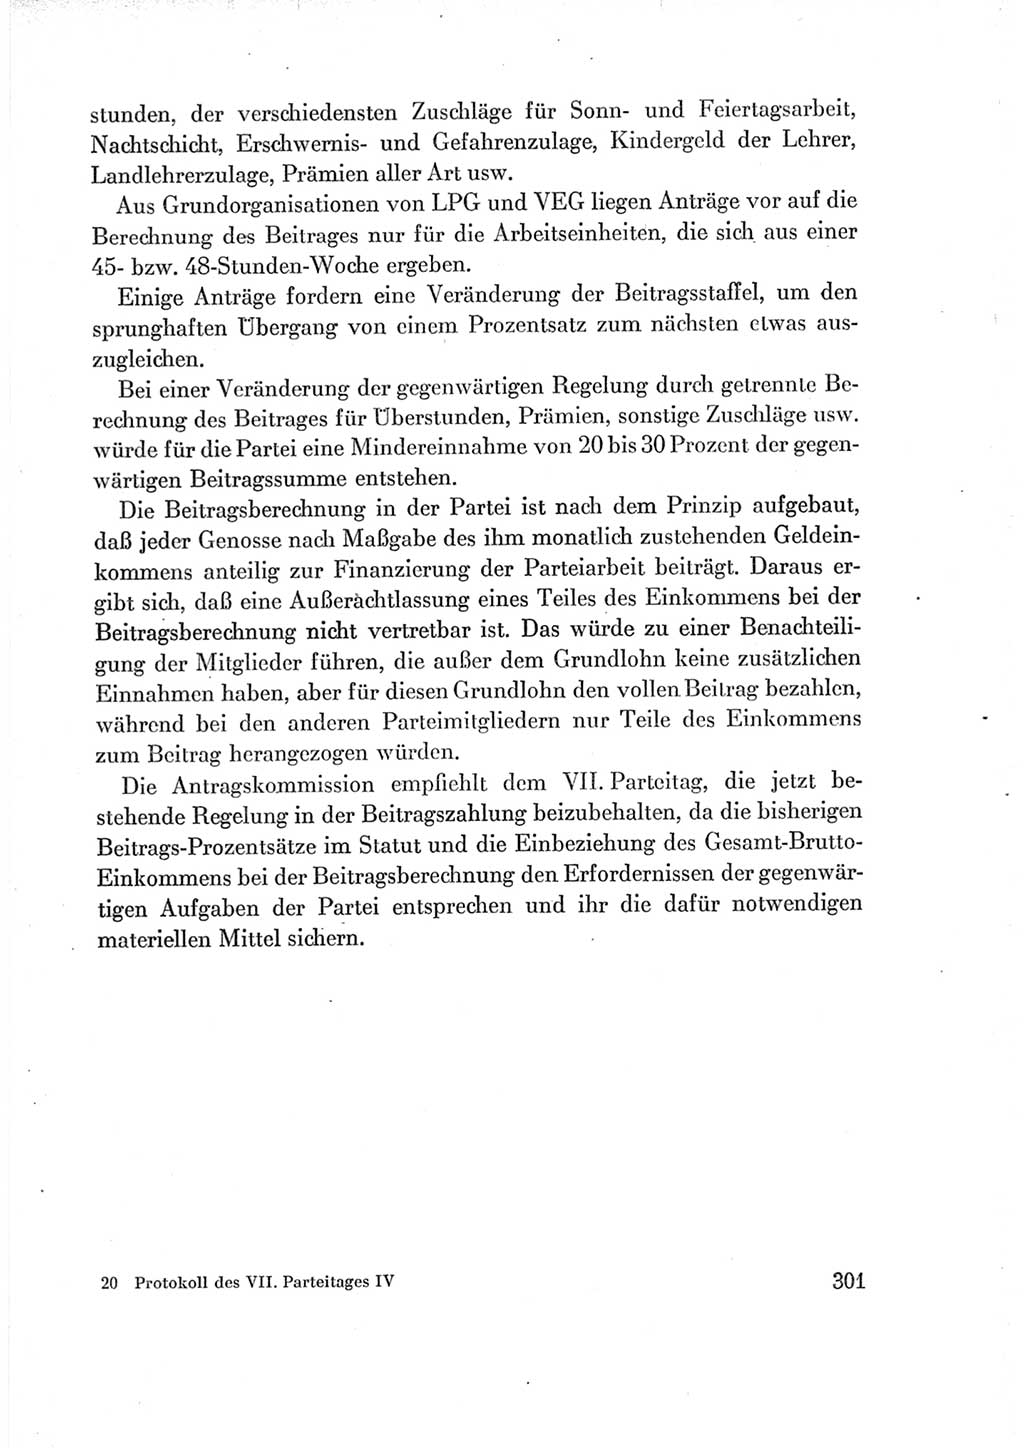 Protokoll der Verhandlungen des Ⅶ. Parteitages der Sozialistischen Einheitspartei Deutschlands (SED) [Deutsche Demokratische Republik (DDR)] 1967, Band Ⅳ, Seite 301 (Prot. Verh. Ⅶ. PT SED DDR 1967, Bd. Ⅳ, S. 301)